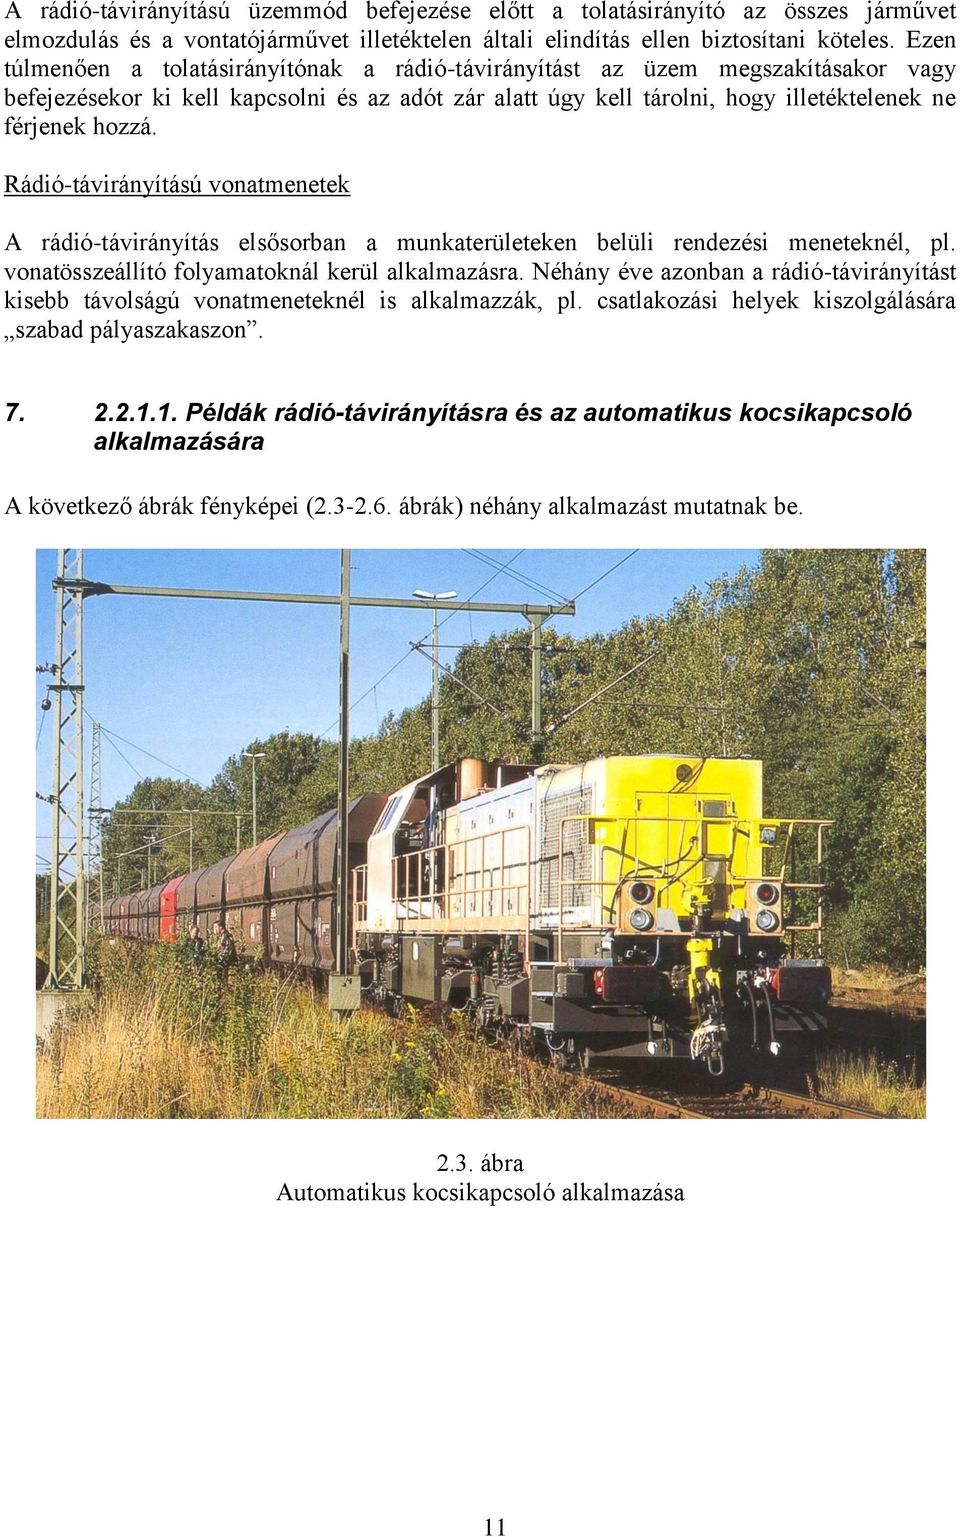 Vasúti járművek rádió távirányítása - PDF Ingyenes letöltés